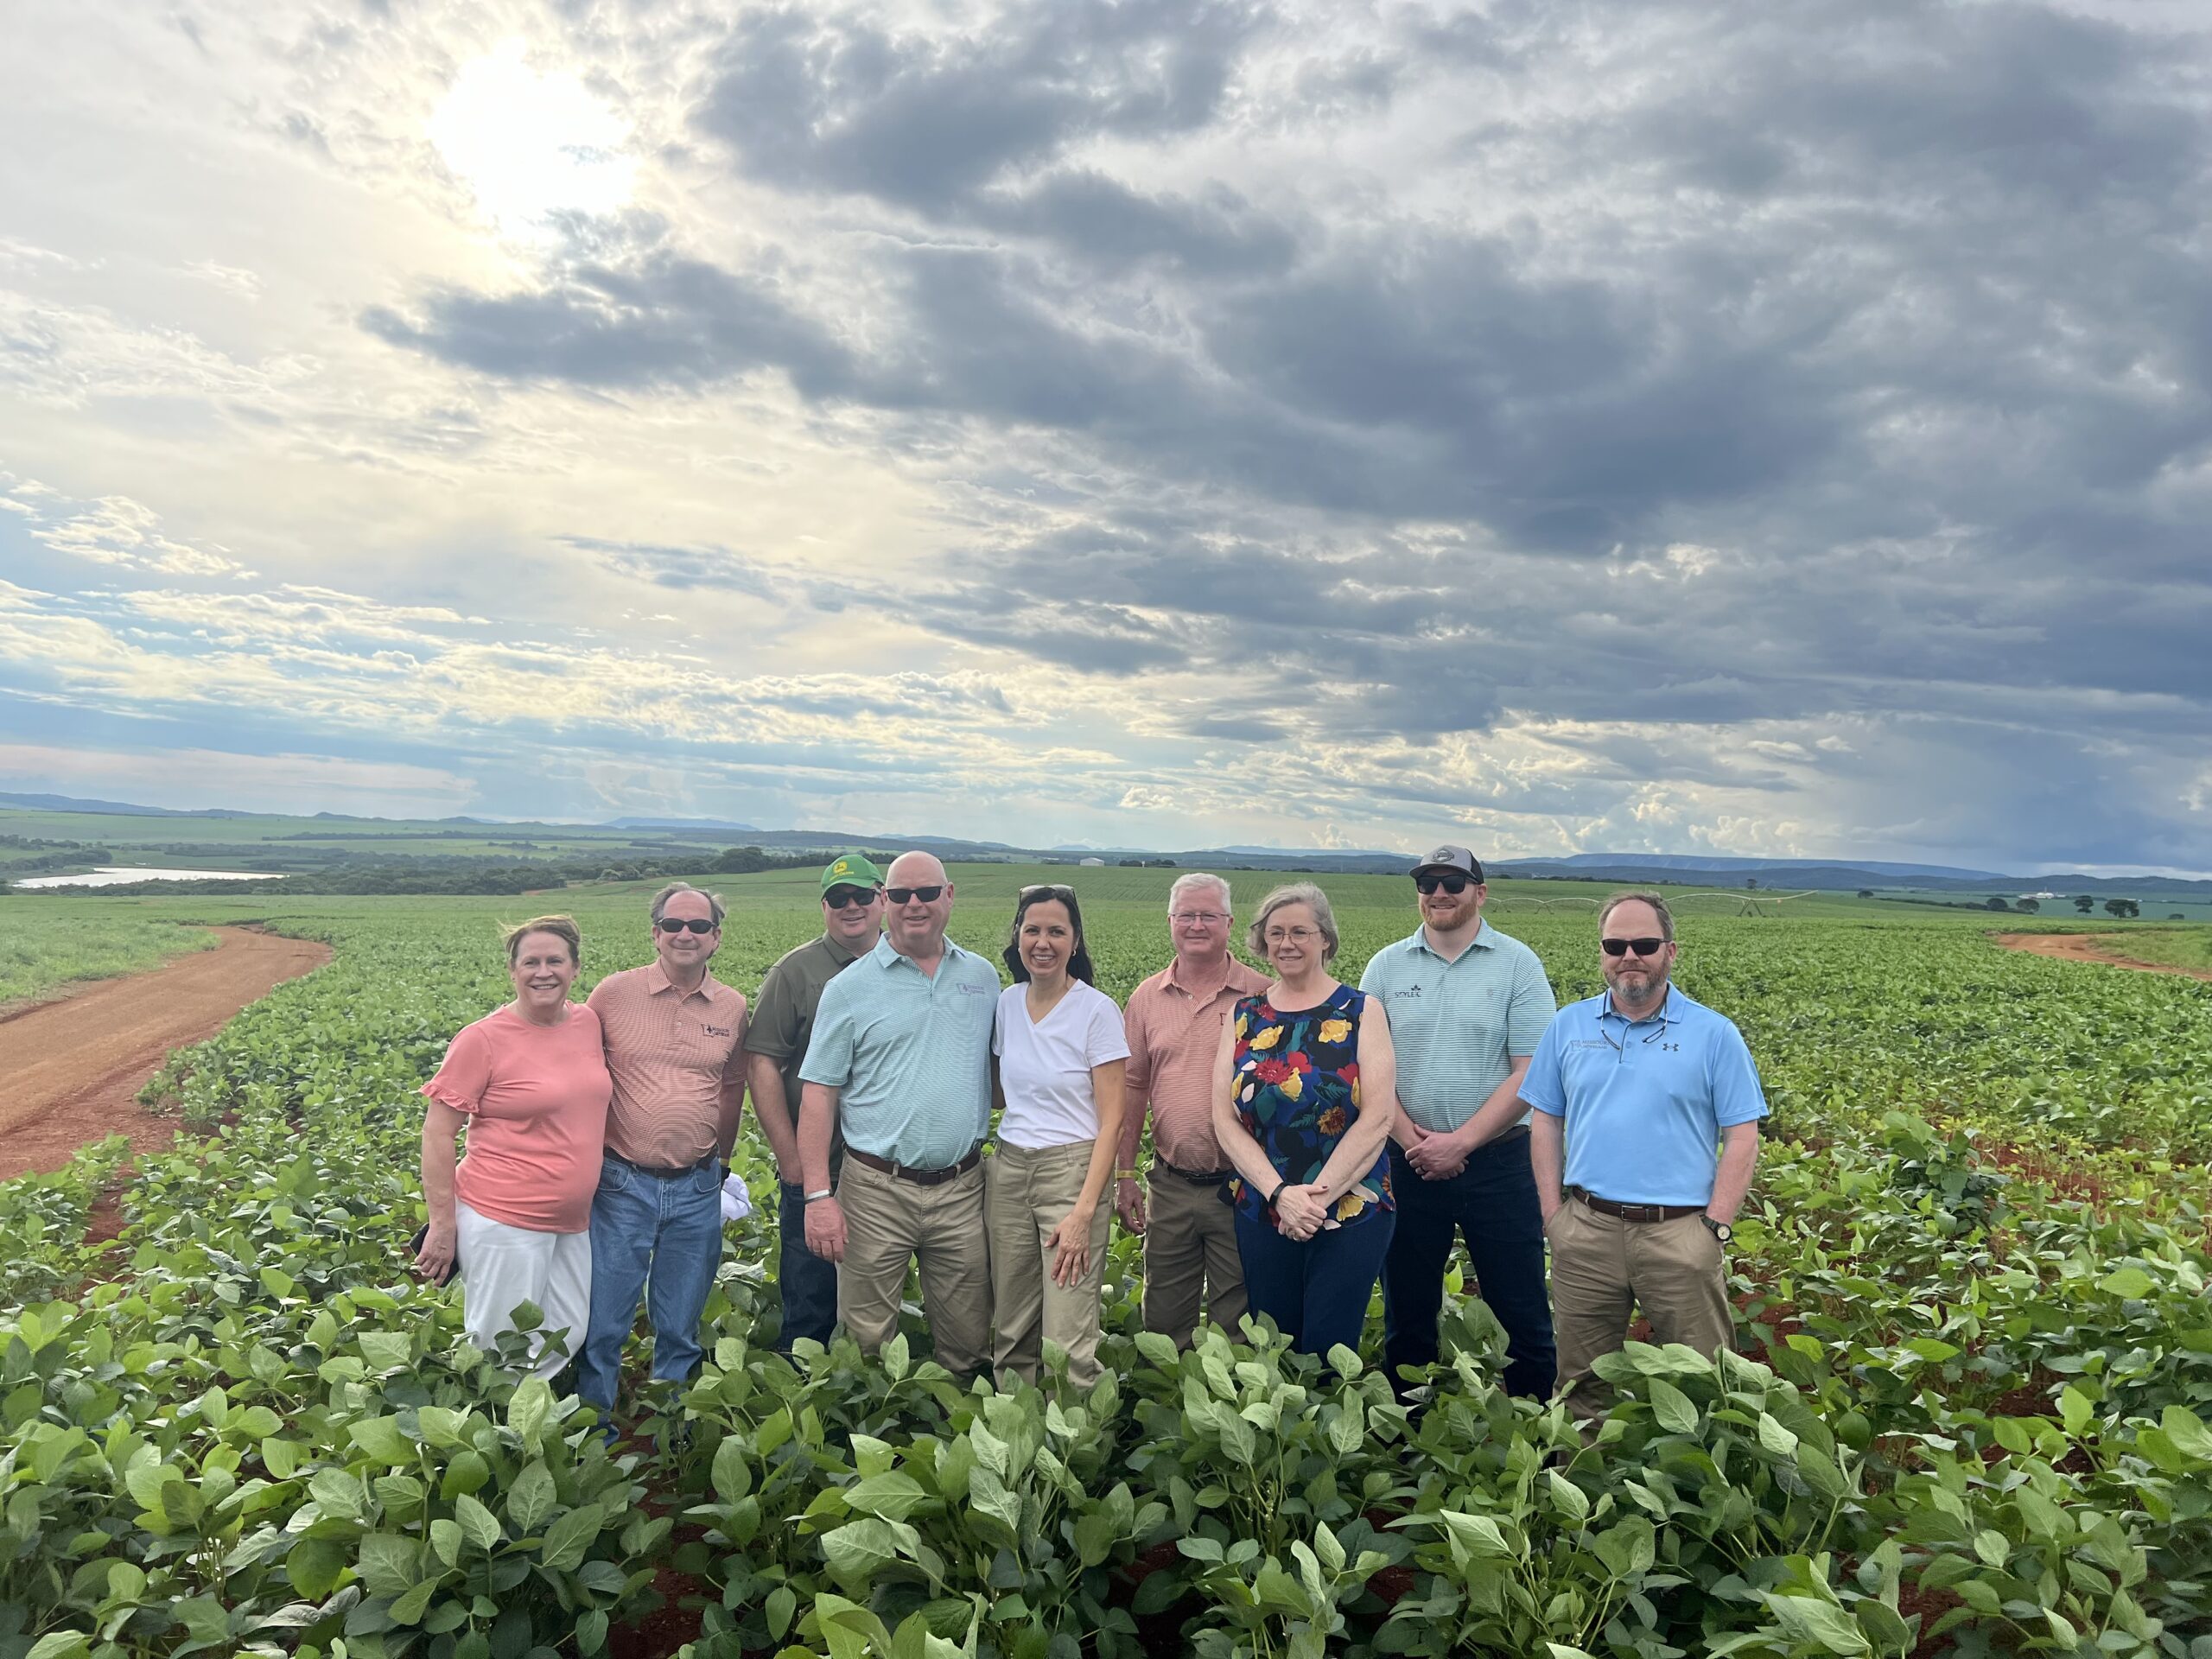 Missouri soybean farmers pose in Brazil field